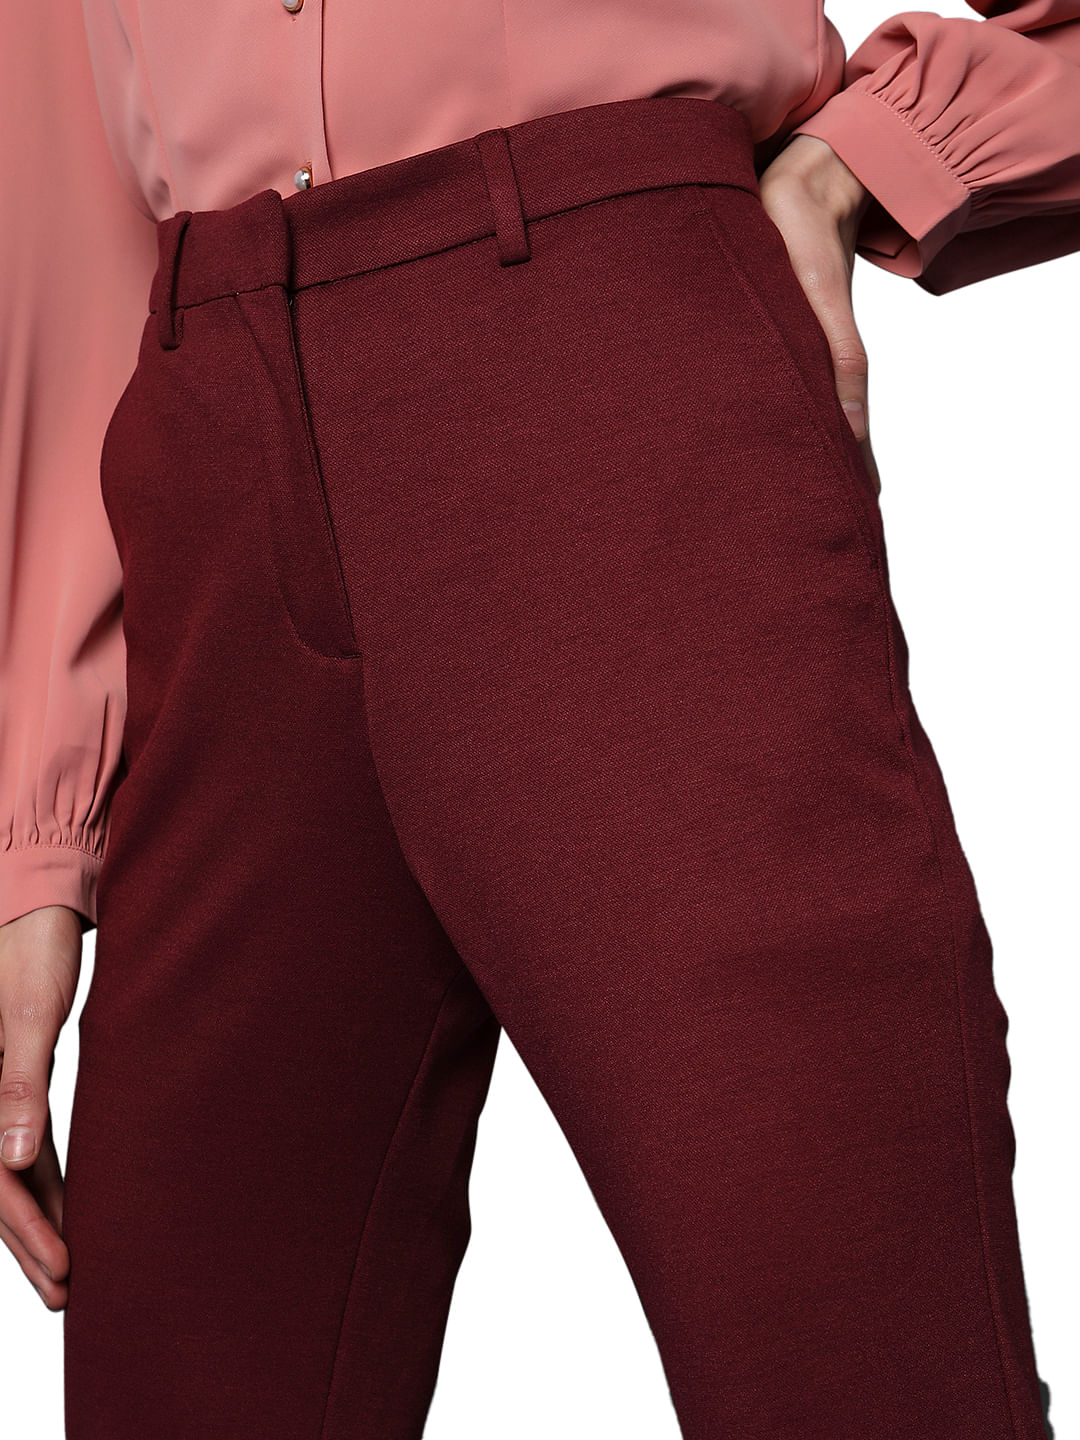 Paisley & Gray Slim Fit Plaid Suit Separates Pants | Pants| Men's Wearhouse